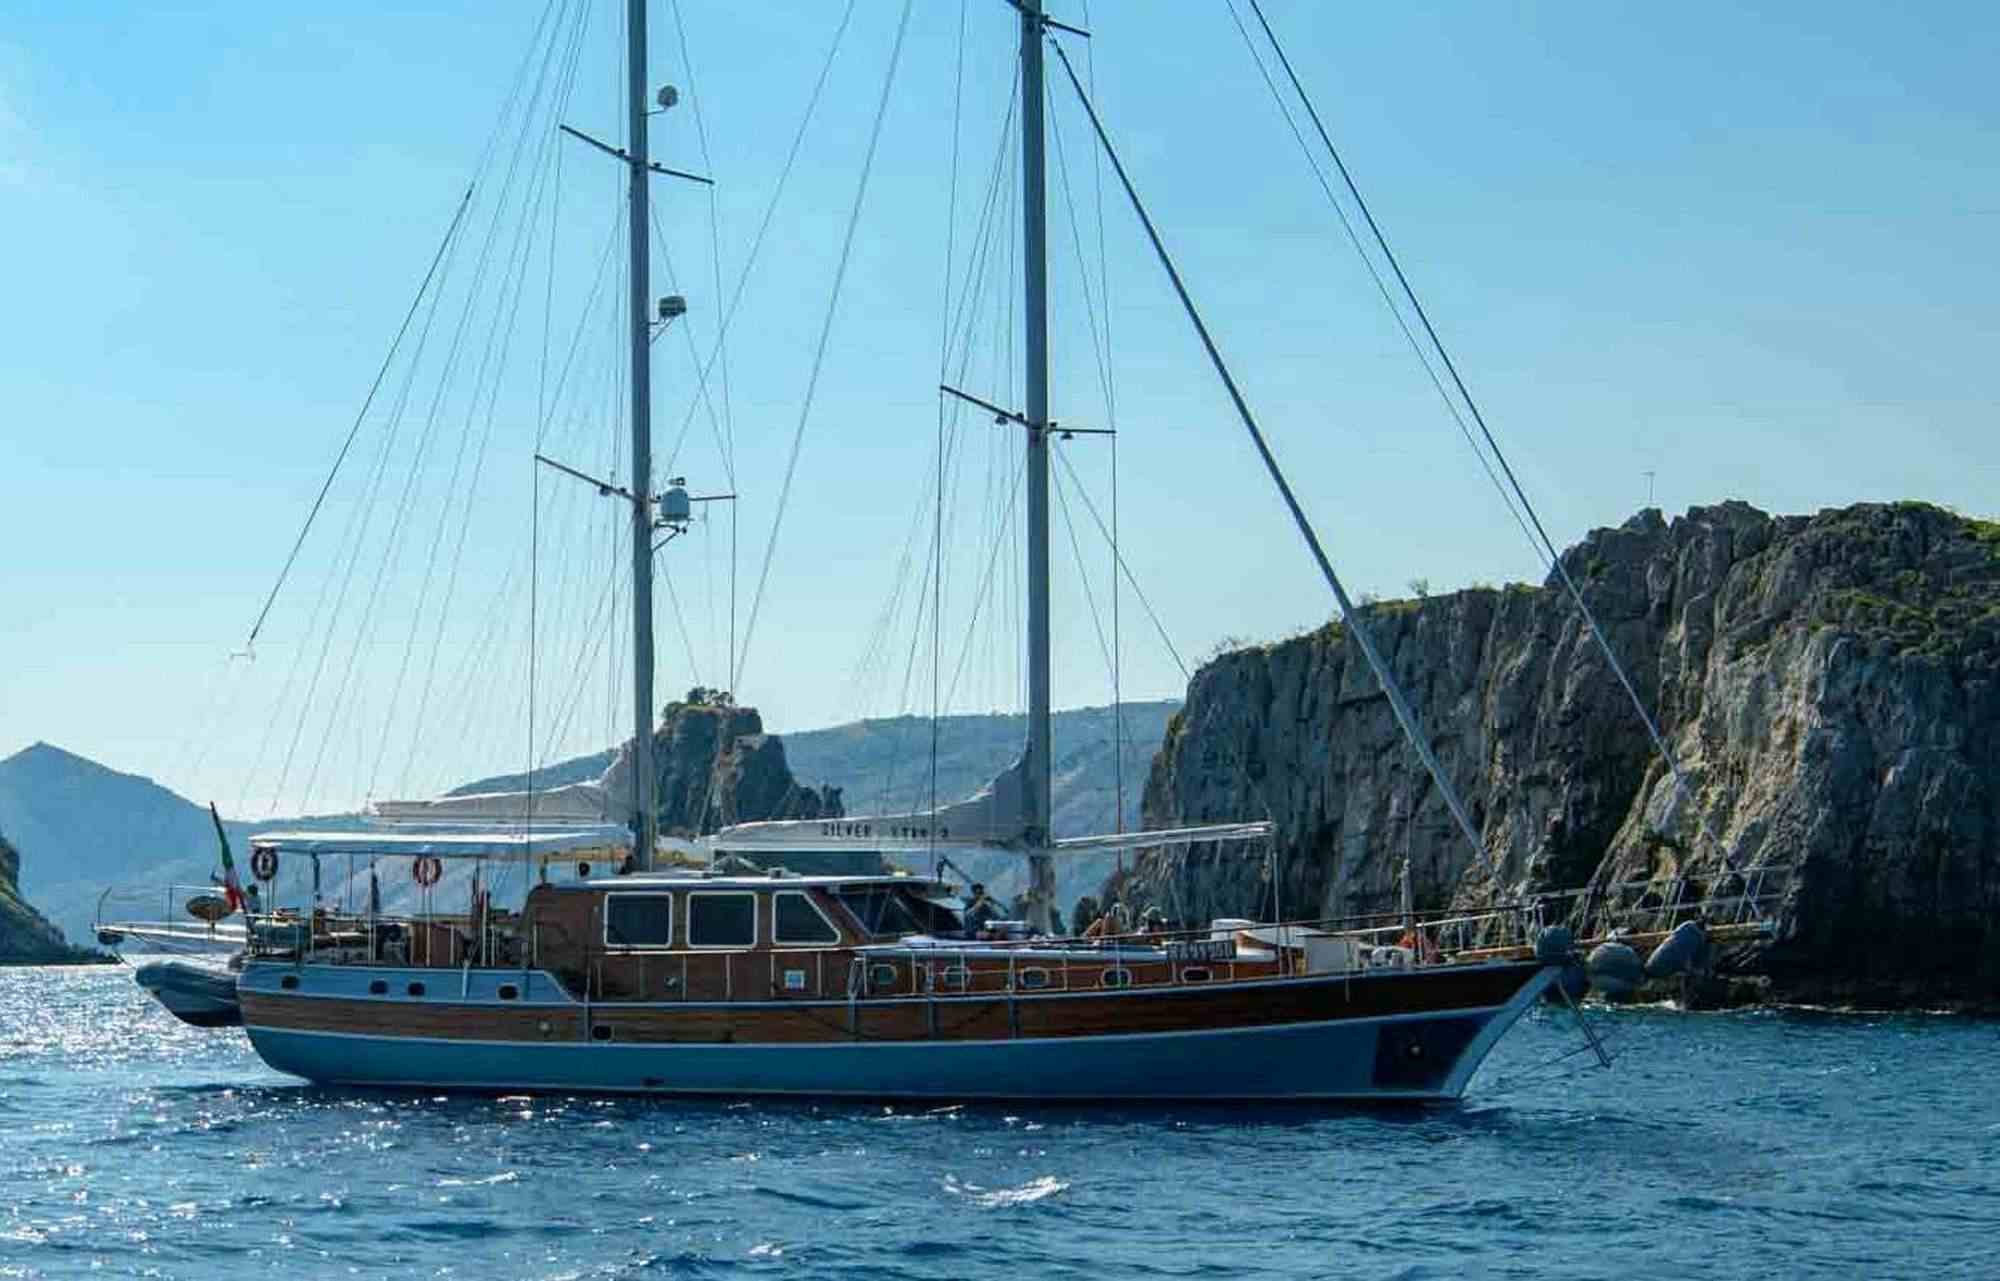 SILVER STAR 2 - Motor Boat Charter Italy & Boat hire in Fr. Riviera & Tyrrhenian Sea 1